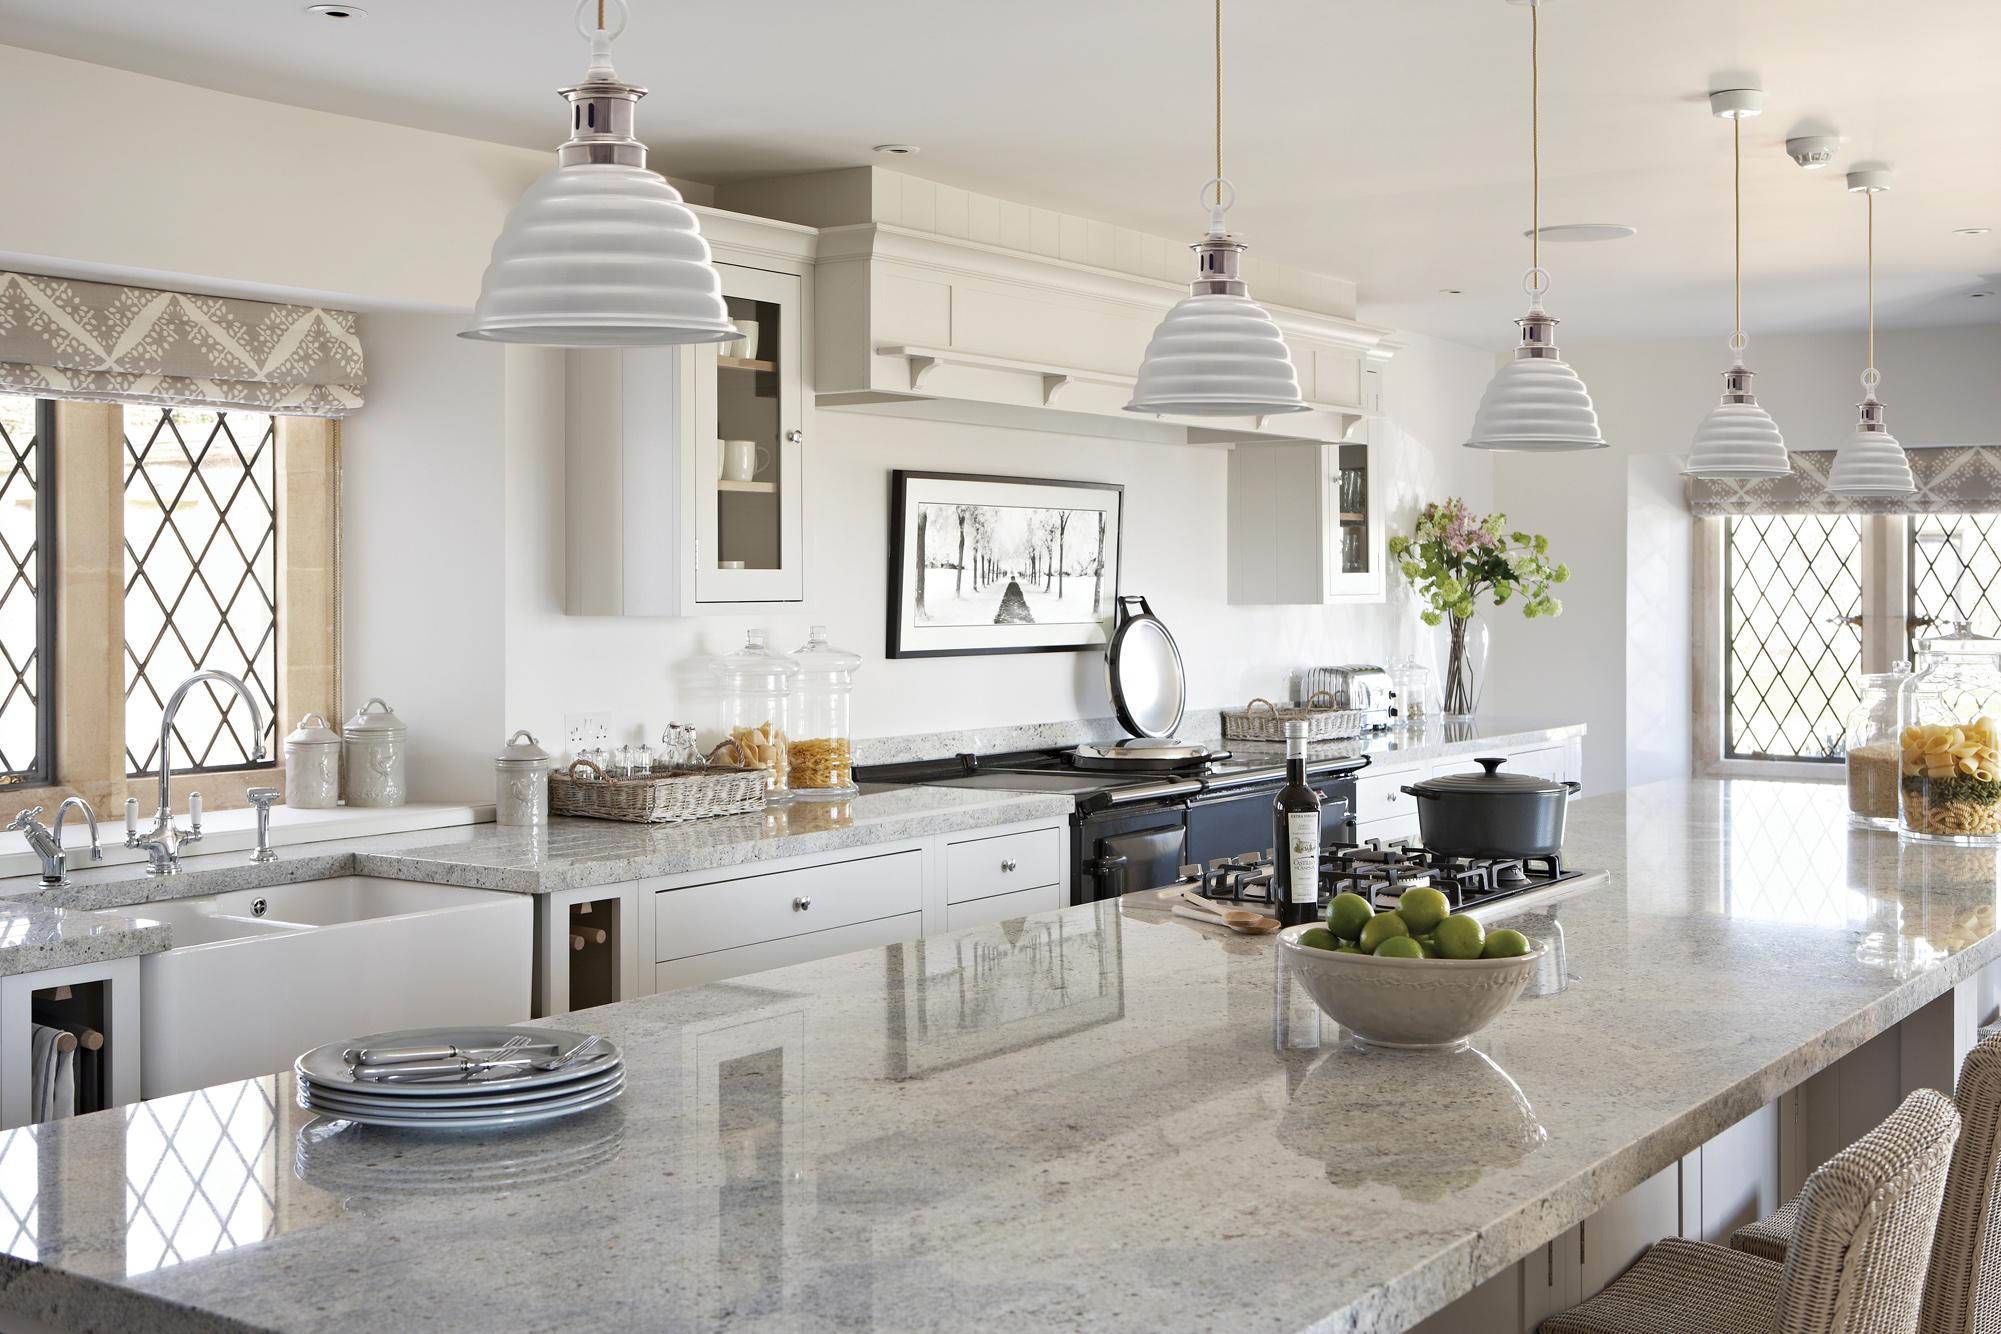 Küche mit Marmorplatte #küche #pendelleuchte #zimmergestaltung ©Neptune